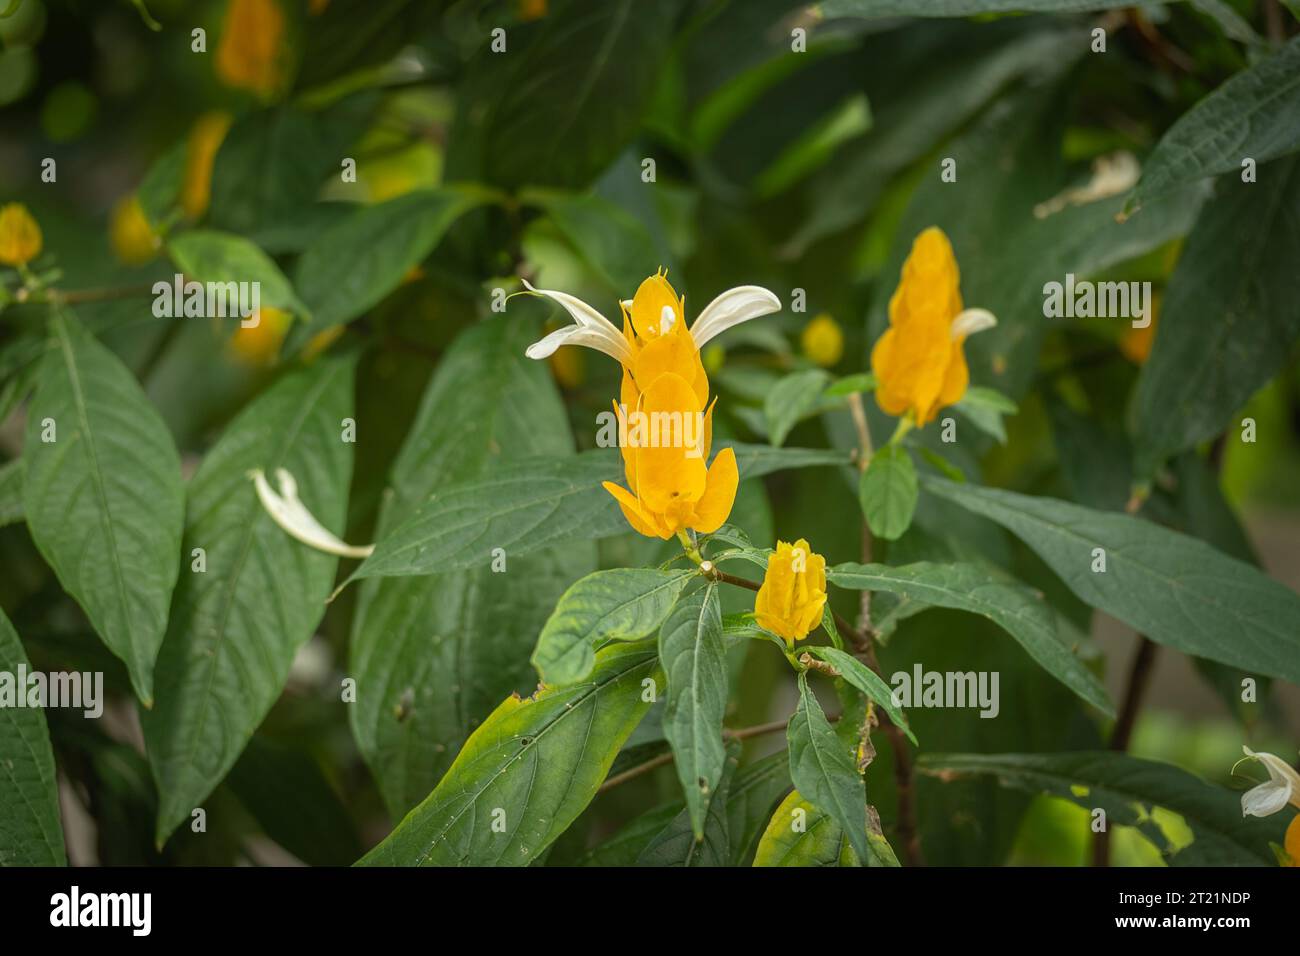 Yellow flowers of Golden Shrimp or Lollipop plant (Pachystachys lutea) Stock Photo